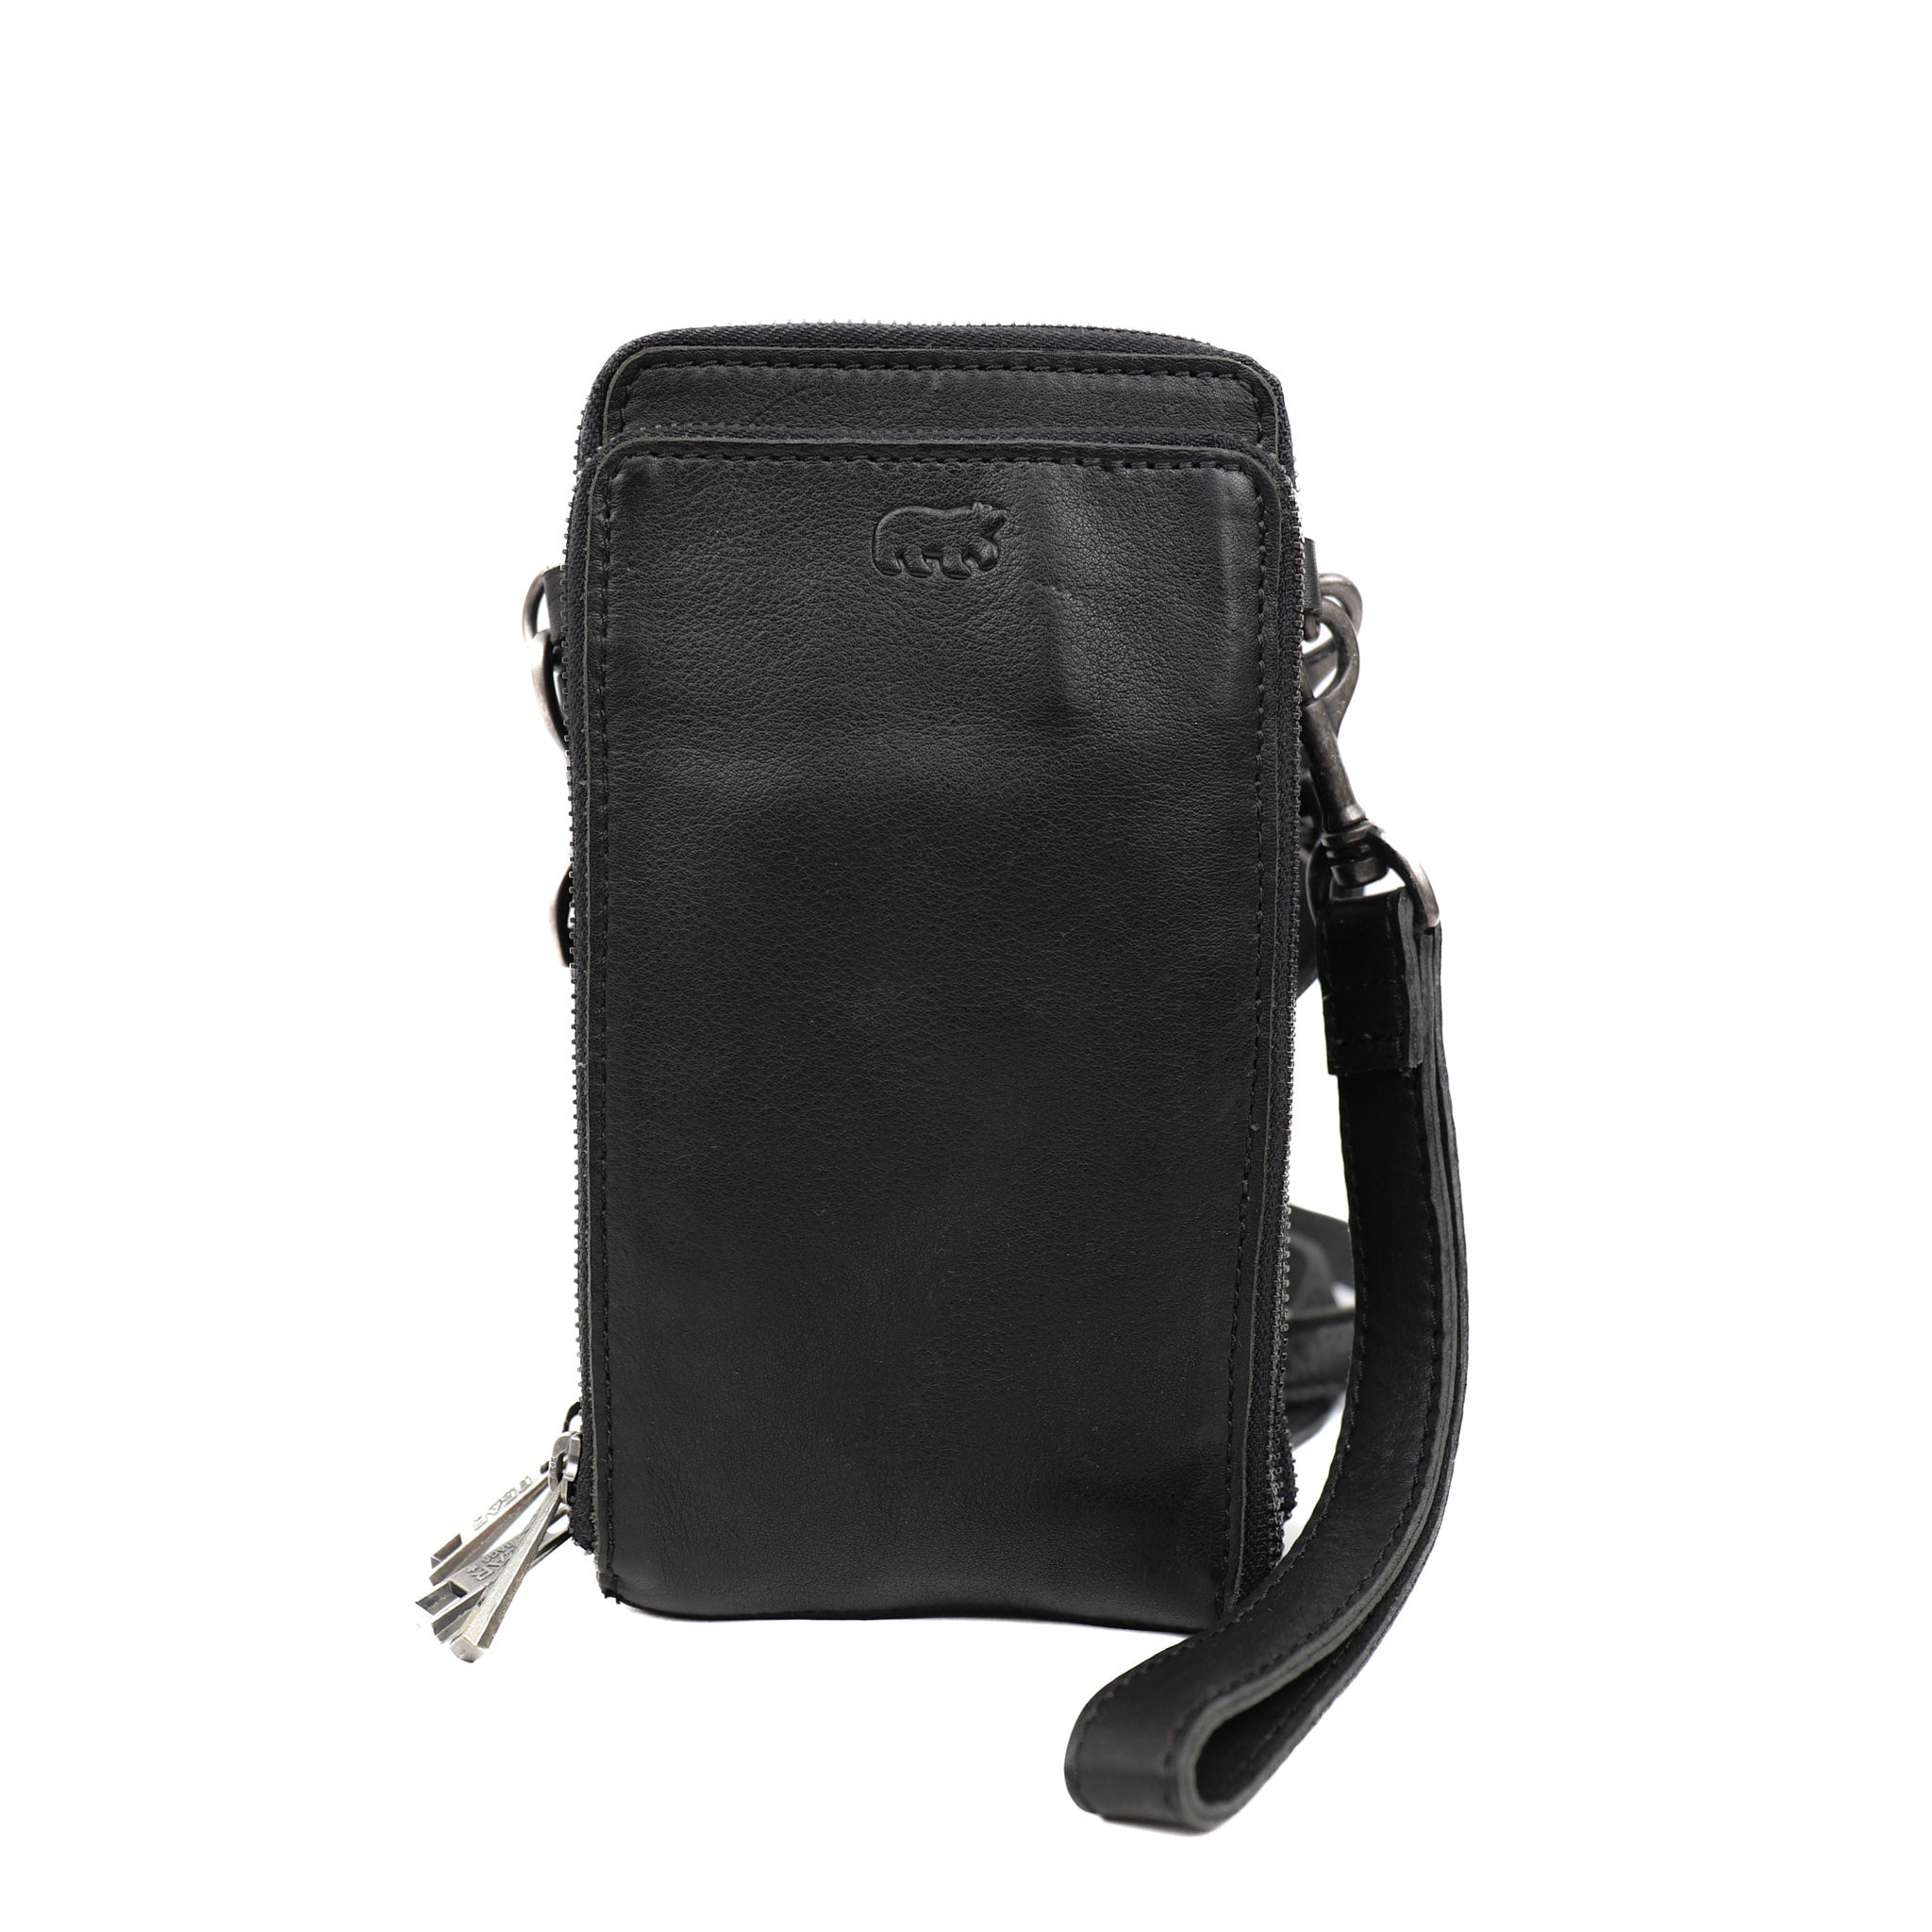 Shoulder bag 'Franky' black - CP 2193